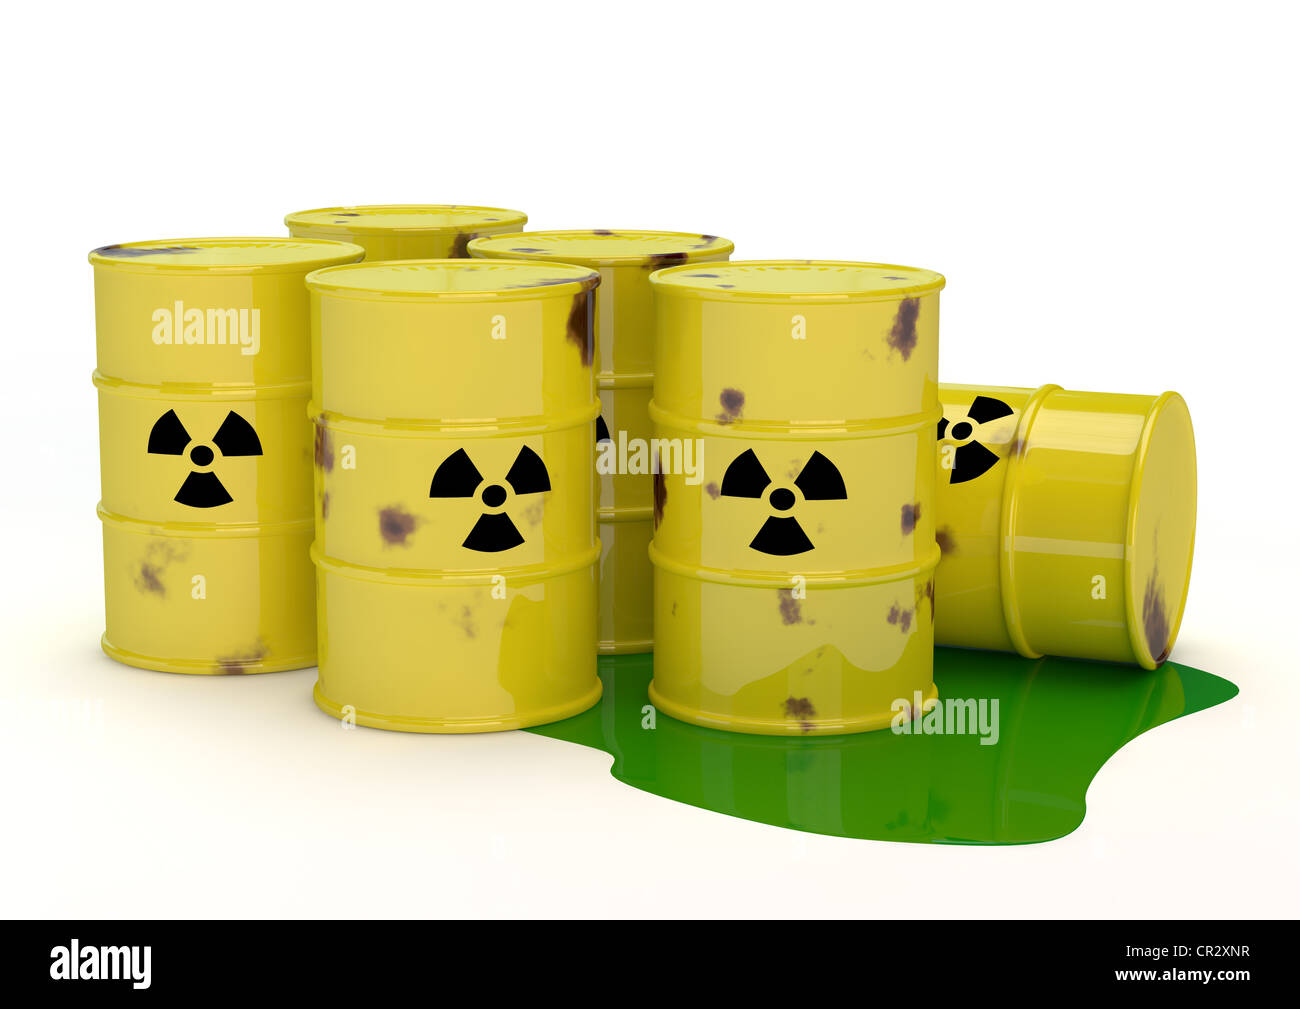 Rostigen Fässern von radioaktivem Atommüll, Endlagerung, Atomkraft, symbolisches Bild, 3D illustration Stockfoto